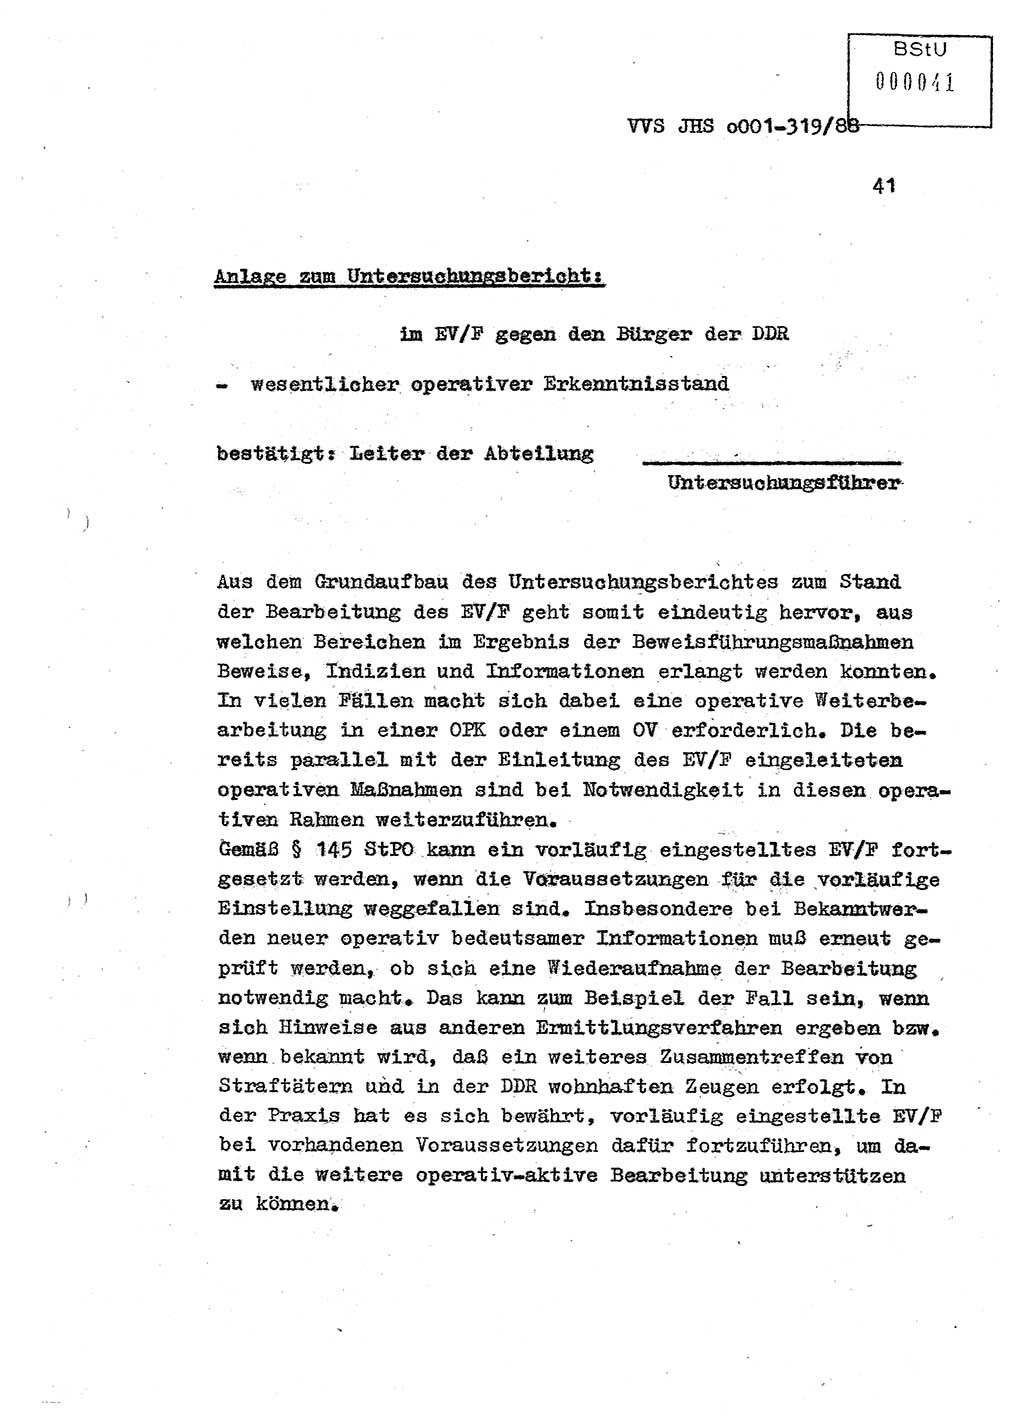 Diplomarbeit Offiziersschüler Holger Zirnstein (HA Ⅸ/9), Ministerium für Staatssicherheit (MfS) [Deutsche Demokratische Republik (DDR)], Juristische Hochschule (JHS), Vertrauliche Verschlußsache (VVS) o001-319/88, Potsdam 1988, Blatt 41 (Dipl.-Arb. MfS DDR JHS VVS o001-319/88 1988, Bl. 41)